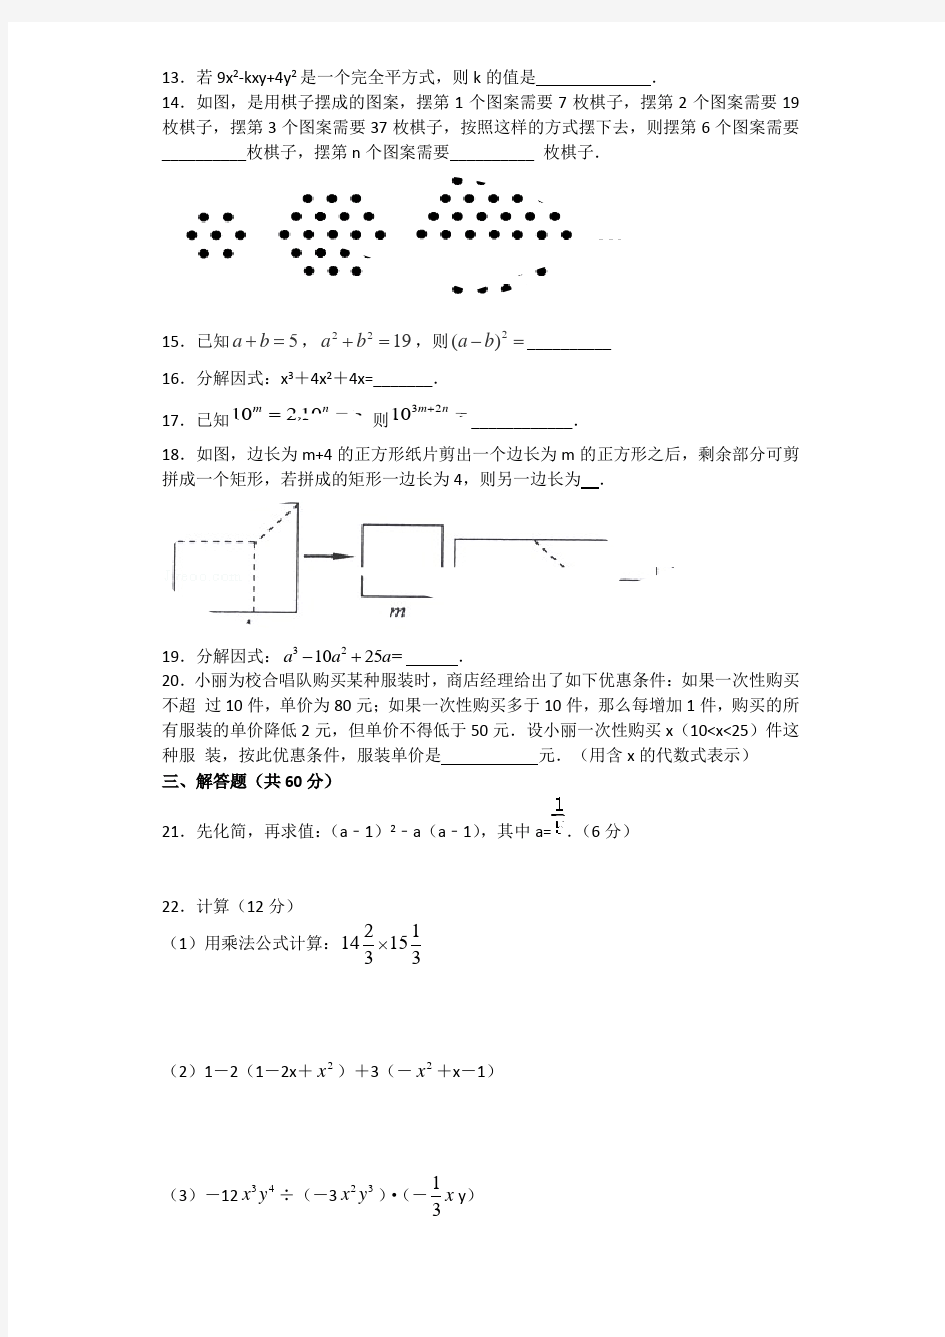 整式的乘法因式分解单元测试题